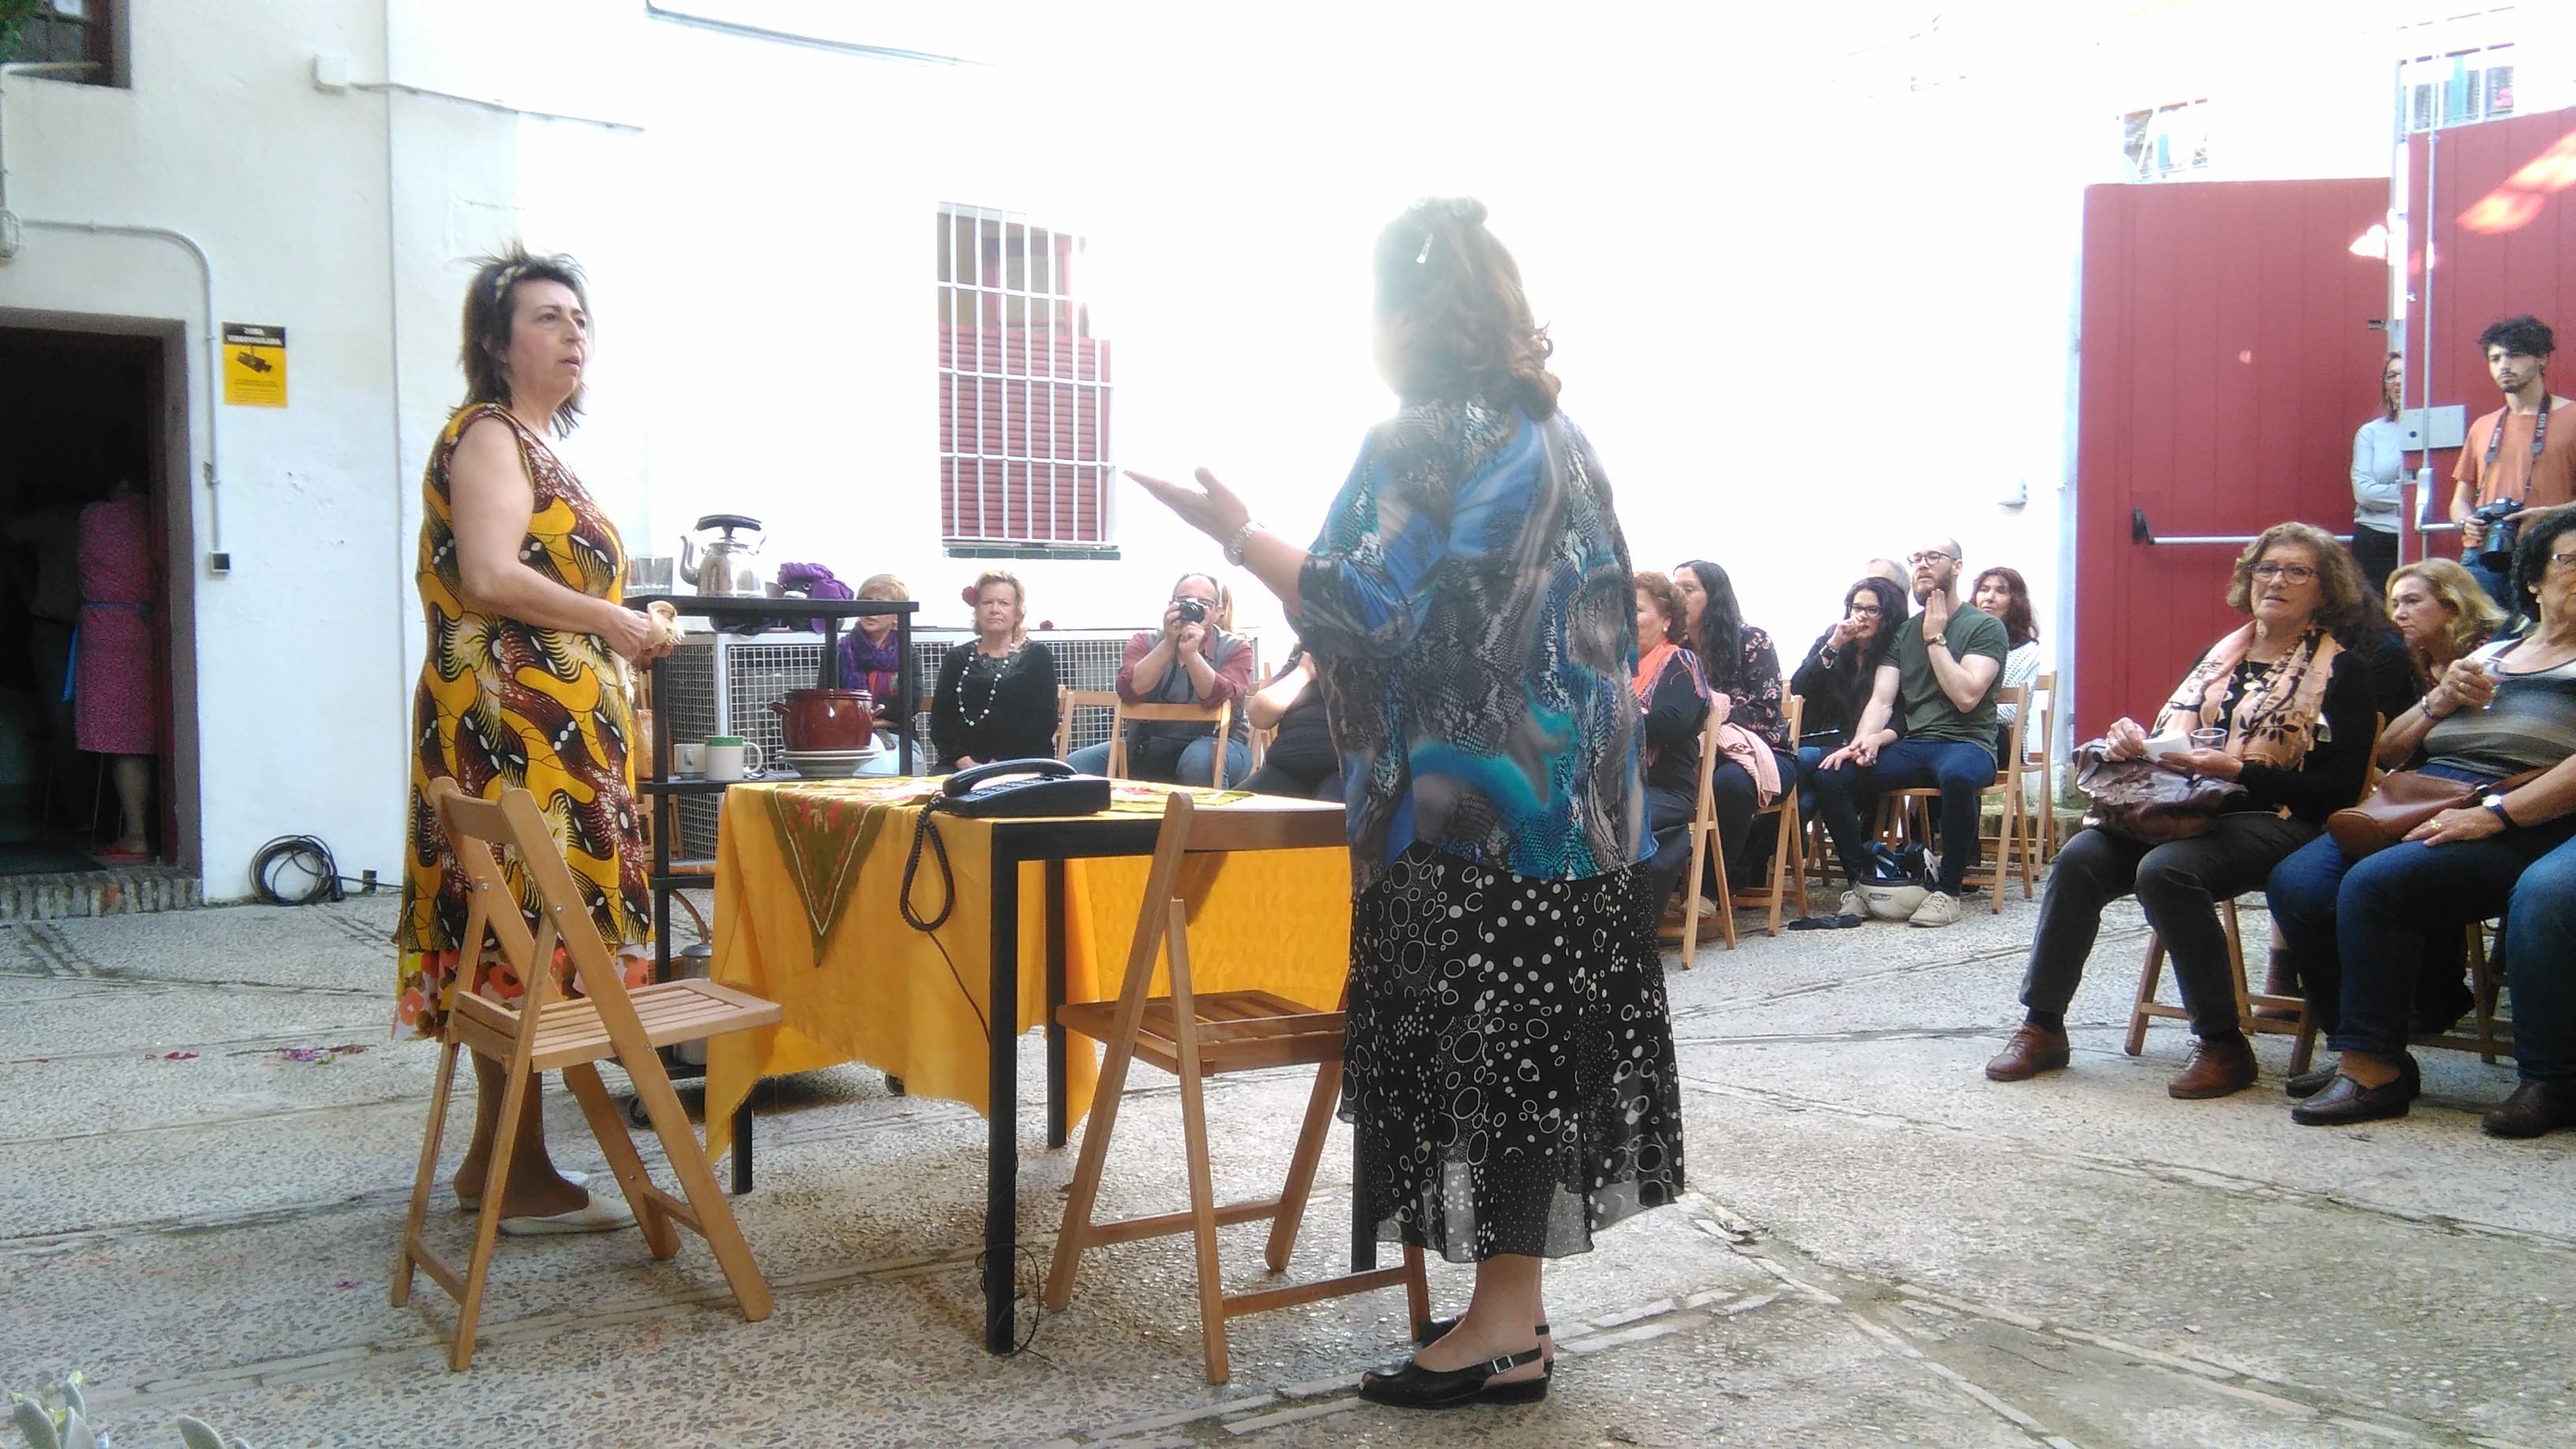 Lo nuestro es puro teatro | Diálogos de mujeres rurales sobre teatro y empoderamiento